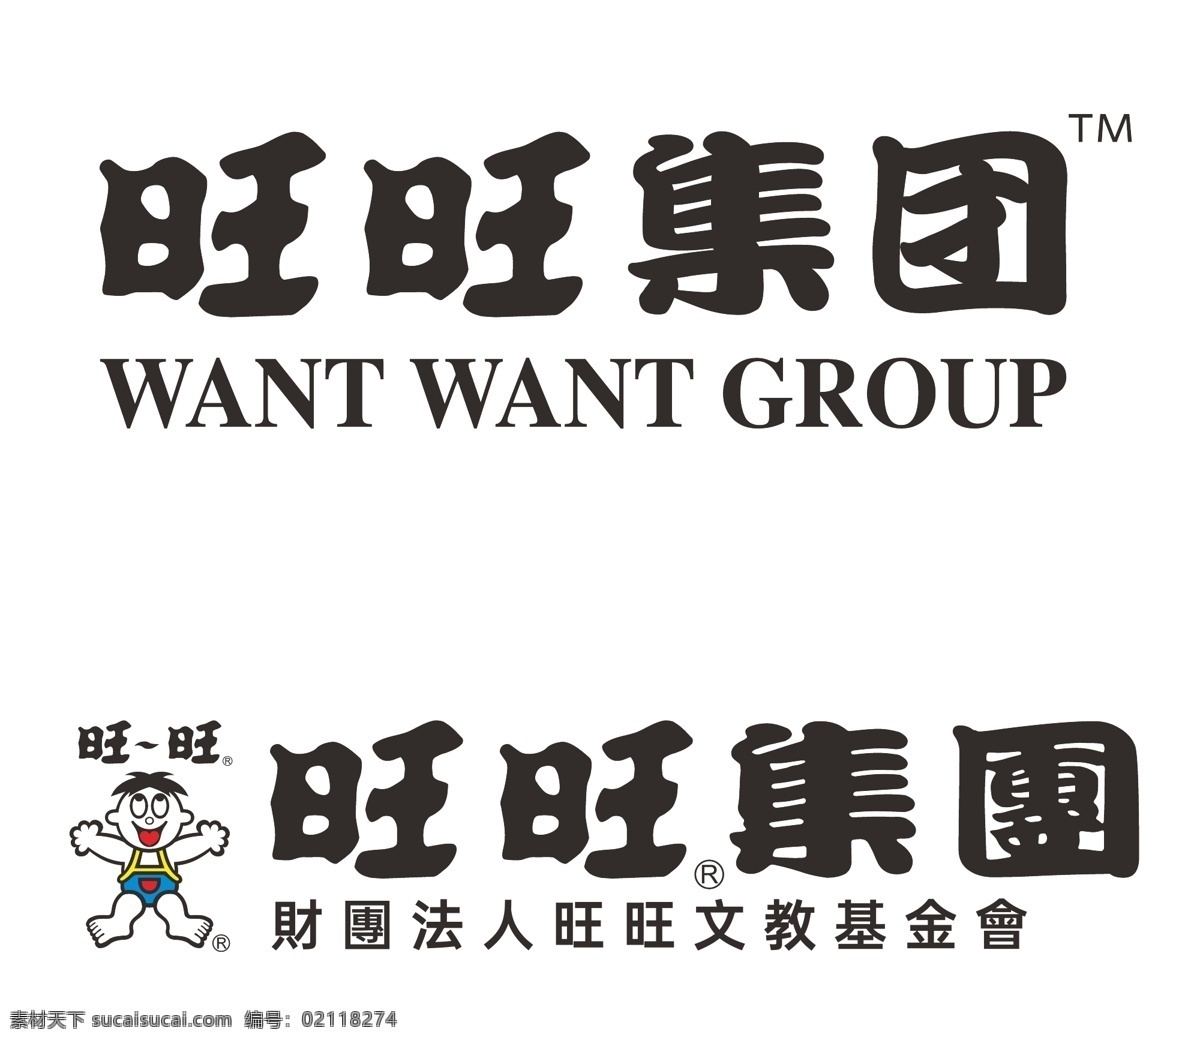 旺旺集团 logo 旺旺 集团 财团 法人 文教 基金会 标志 图标 矢量 图案 企业 标志logo 标志图标